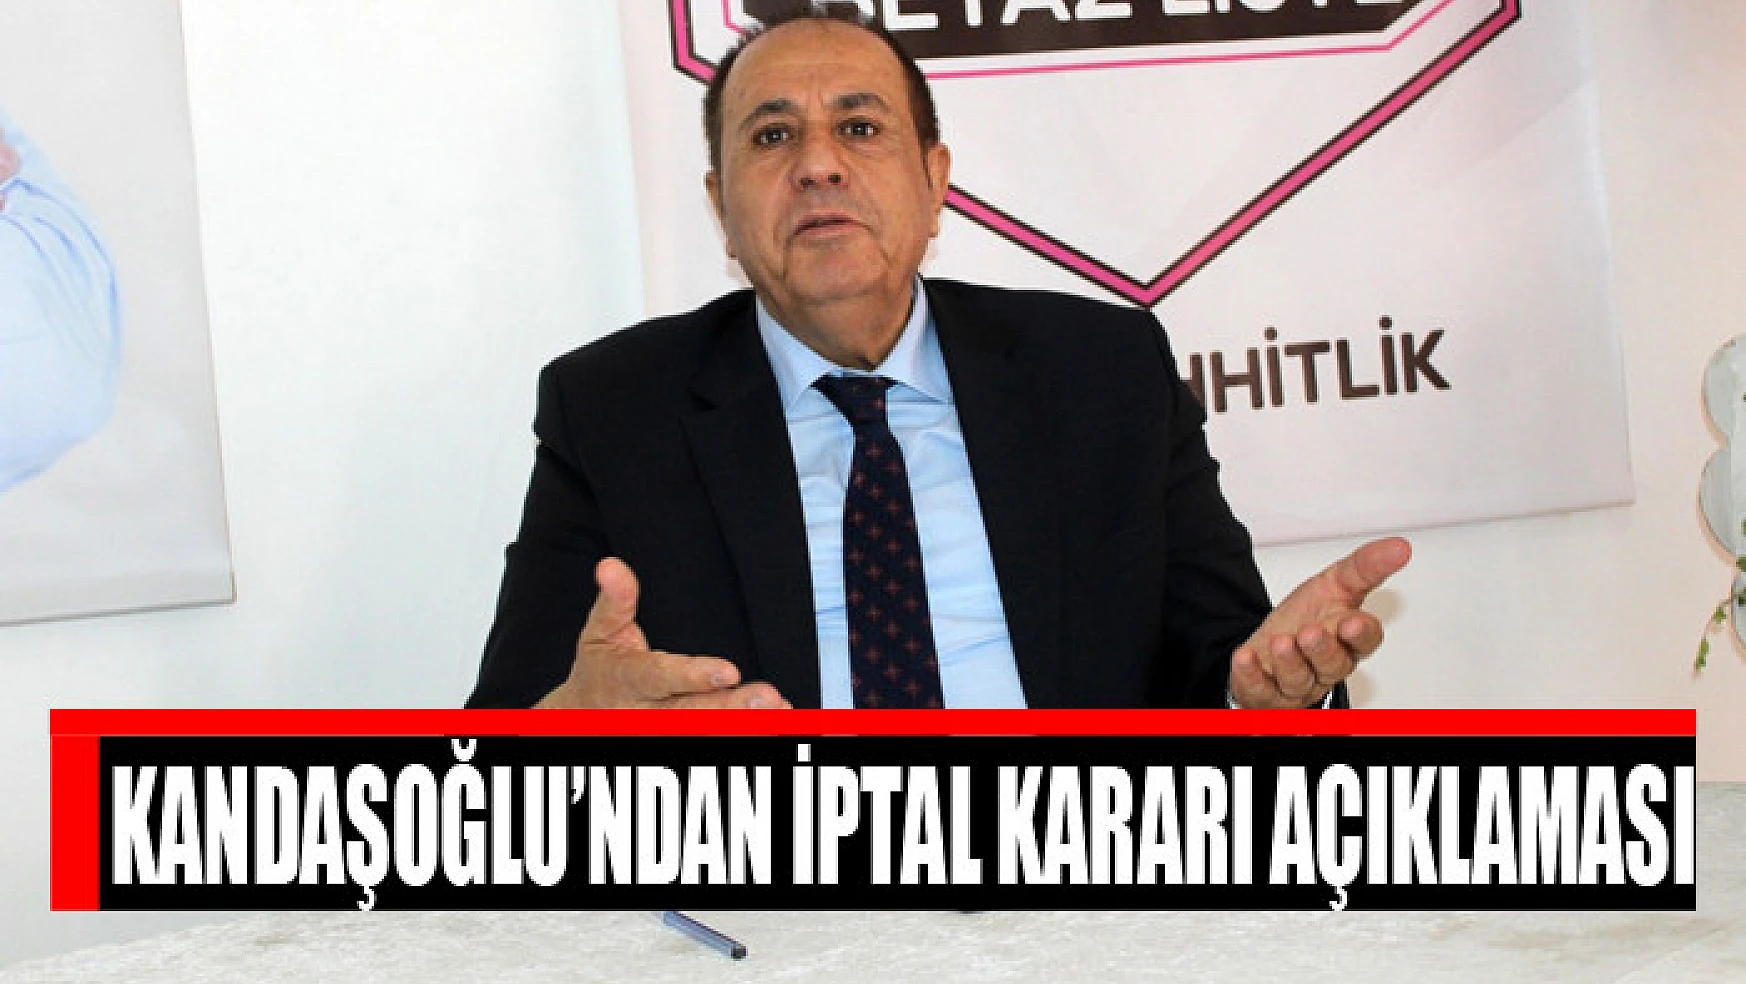 Kandaşoğlu'ndan iptal kararı açıklaması